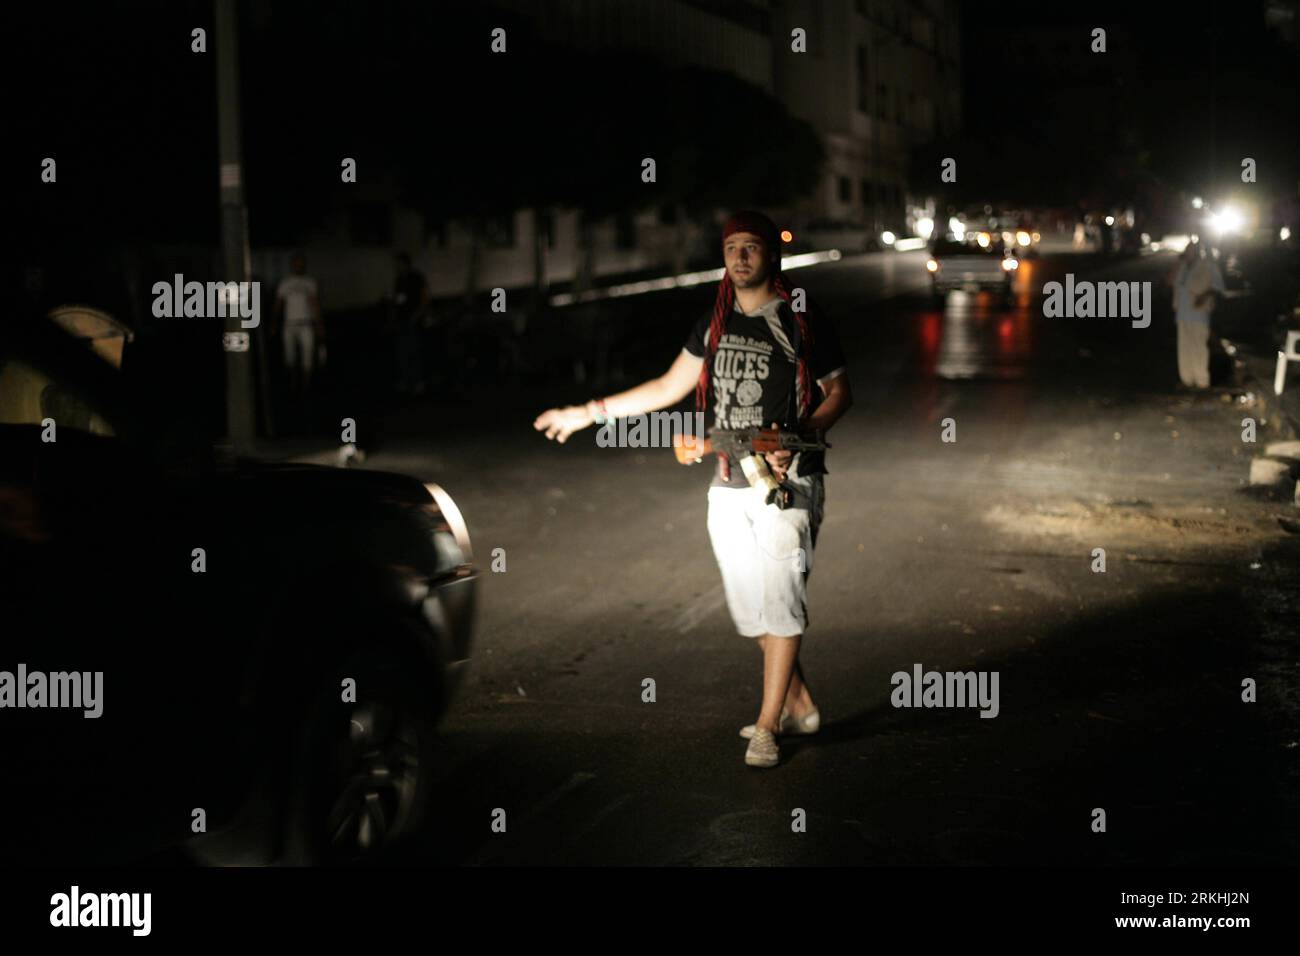 Bildnummer: 55834838 Datum: 27.08.2011 Copyright: imago/Xinhua (110828) -- TRIPOLI, 28. August 2011 (Xinhua) -- Rebellenkämpfer werden an einem Straßenkontrollpunkt in der Innenstadt von Tripoli, Libyen, gesehen, 27. August 2011. Der Leiter des Libyschen Nationalen Übergangsrates (NTC) Mostafa Abdel Jalil versprach am Samstag faire Prozesse für die mit dem gefallenen Führer Muammar Gaddafi arbeitenden.(Xinhua/Nasser Nouri)(wn) LIBYA-TRIPOLI-UNREST PUBLICATIONxNOTxINxCHN Gesellschaft Politik UNRUHEN Krieg Bürgerkrieg Rebellen Sicherheit Fahrzeugkontrolle Premiumd xns 2011 quer Bildnummer 55834838 Datum 27 08 2011 Copyright Ima Stockfoto